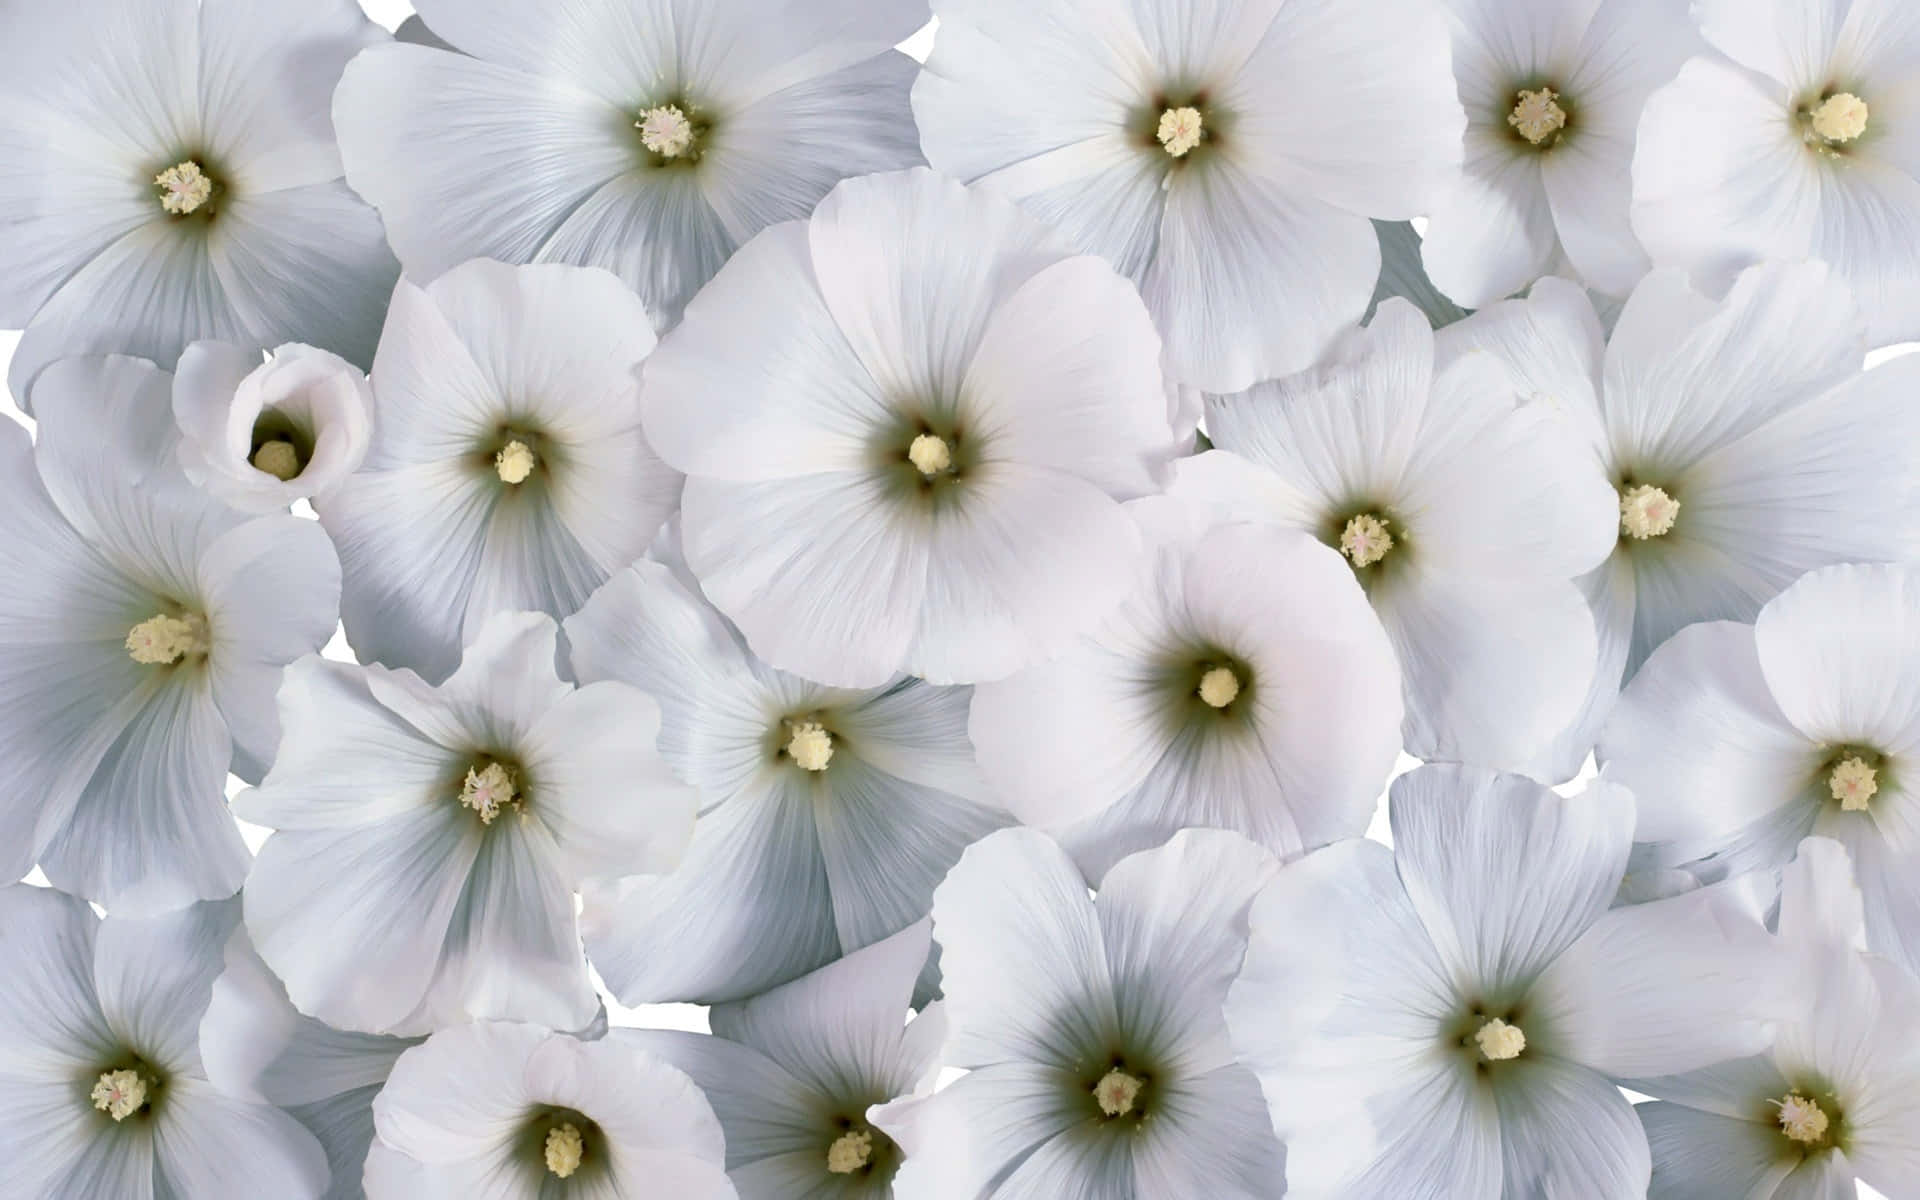 Unbellissimo Fiore Bianco Circondato Da Petali Gialli In Una Giornata Di Sole.